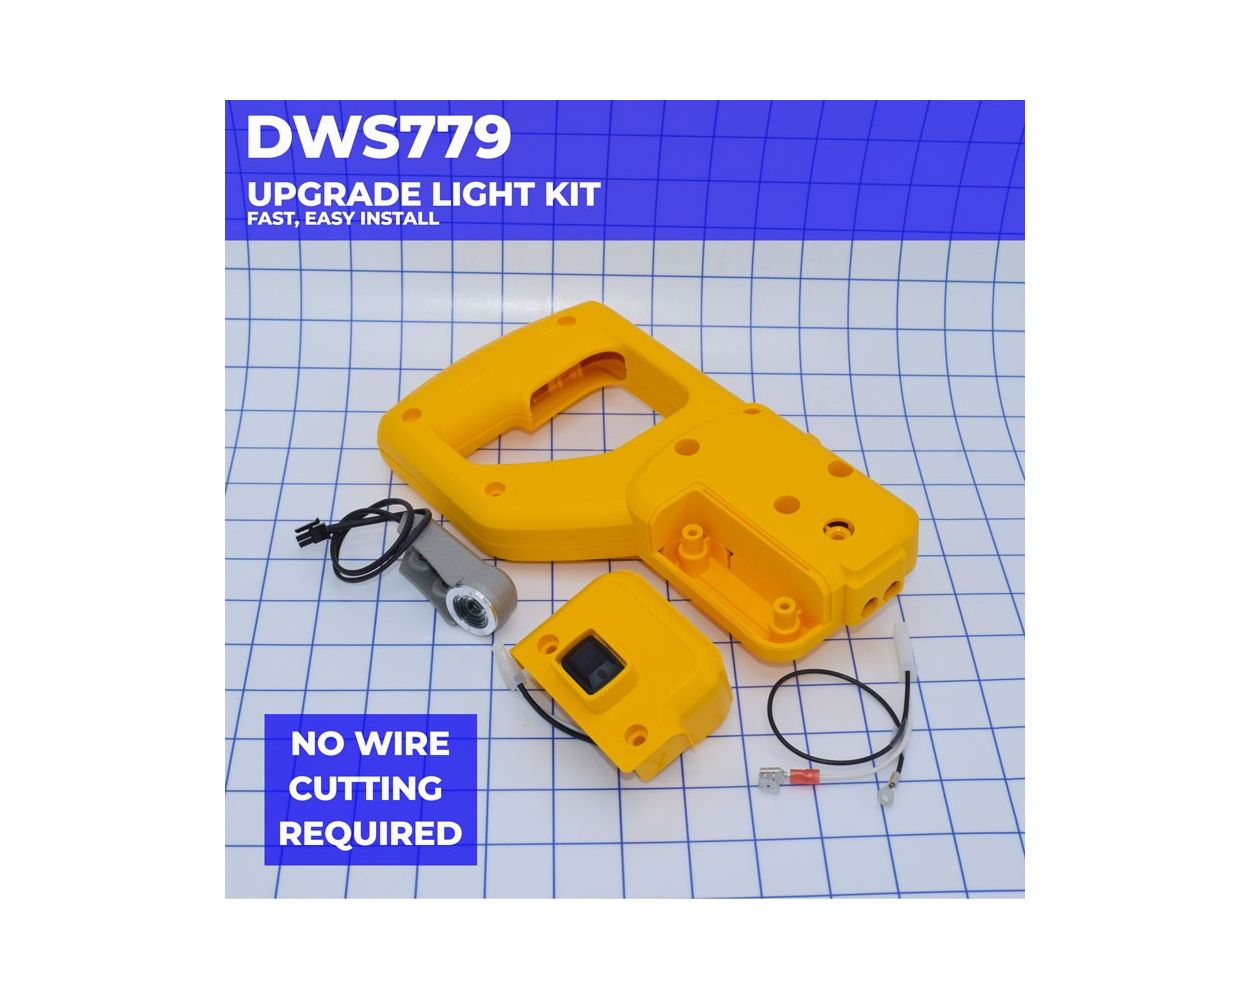 drinken Niet genoeg zijn DWS779 XPS LED Light Upgrade Kit - Dewalt®